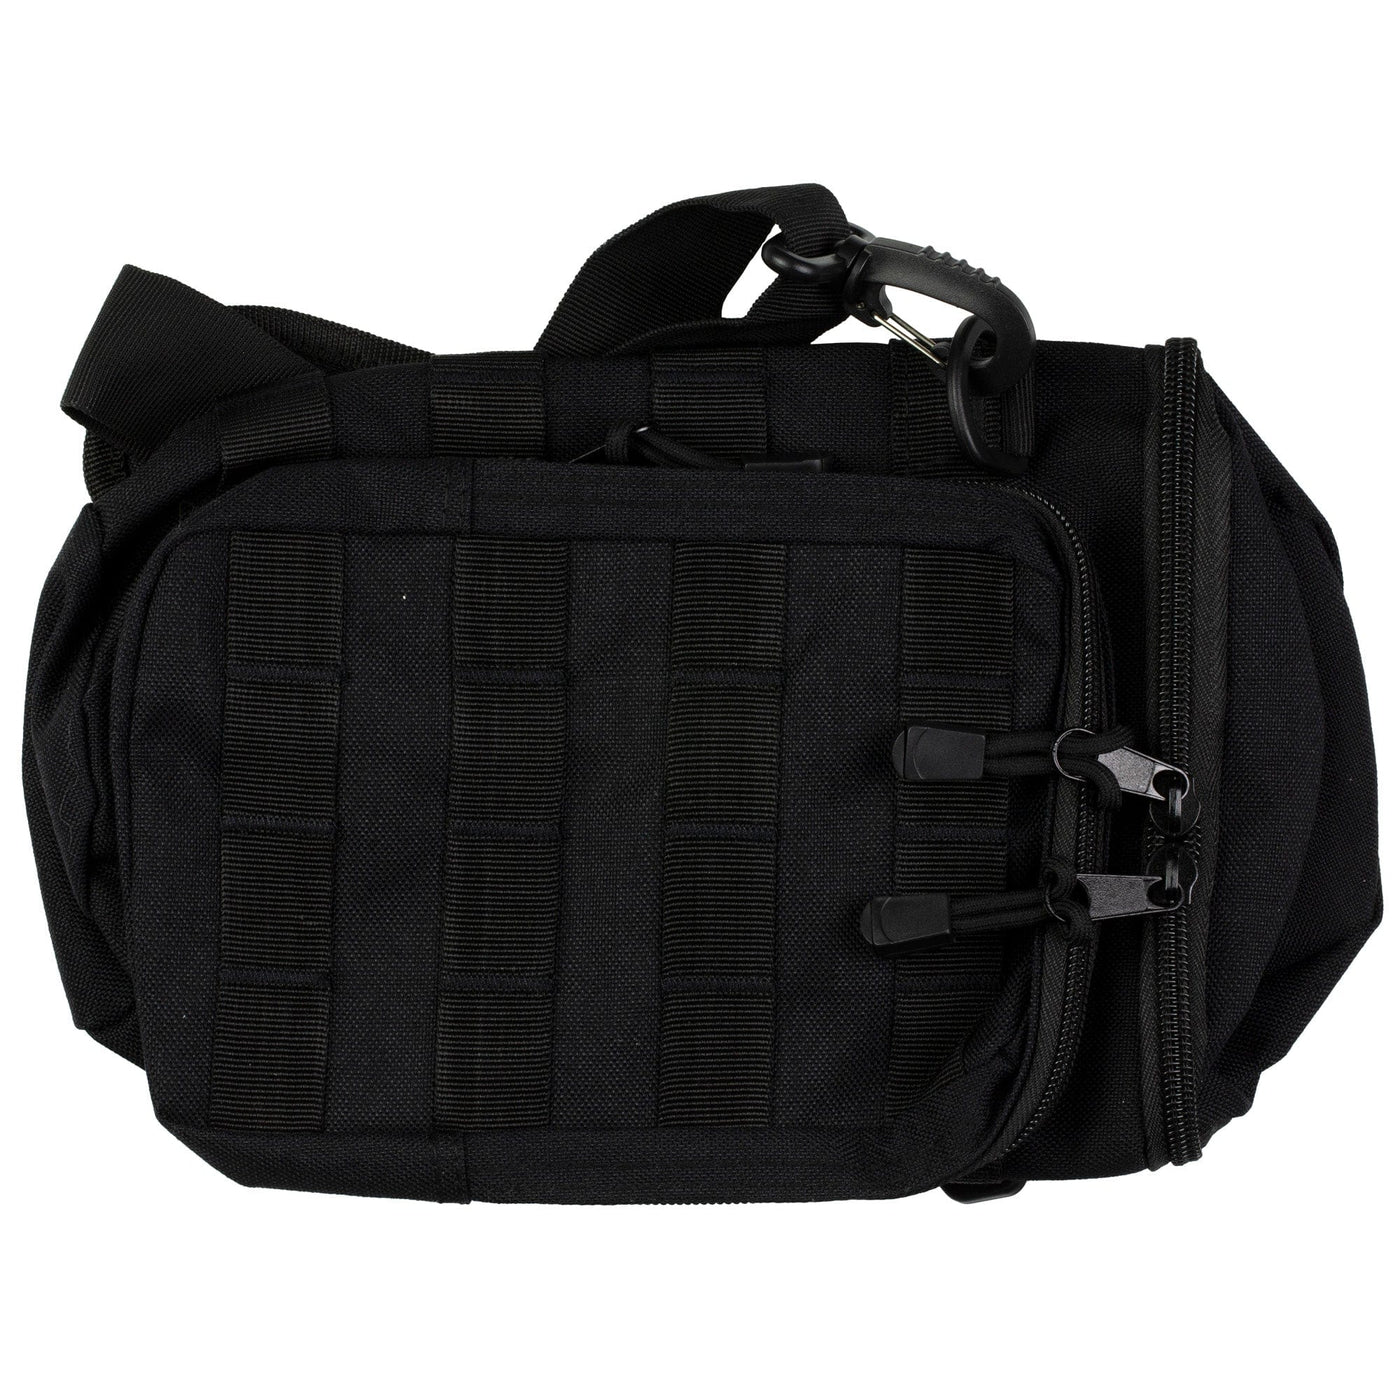 Pathfinder Pathfinder Bottle Bag Black Soft Gun Cases